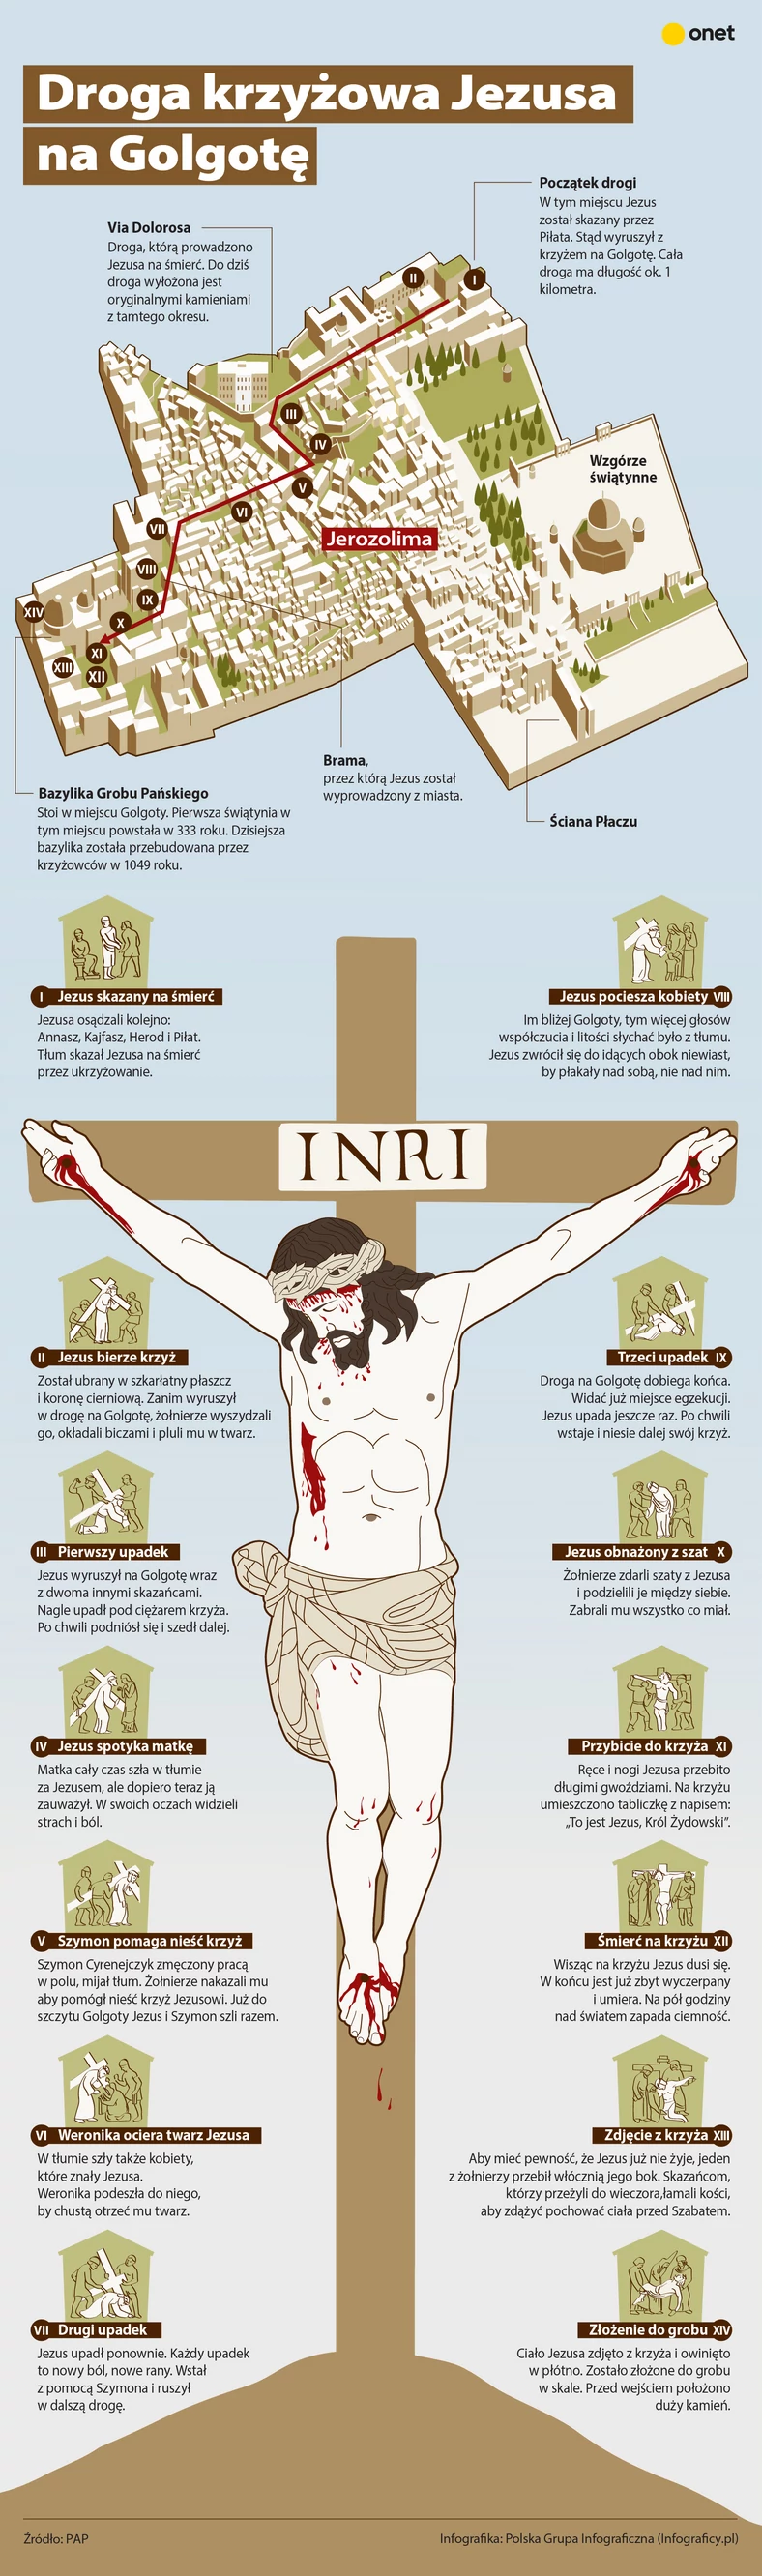 Droga Krzyżowa Jezusa - infografika